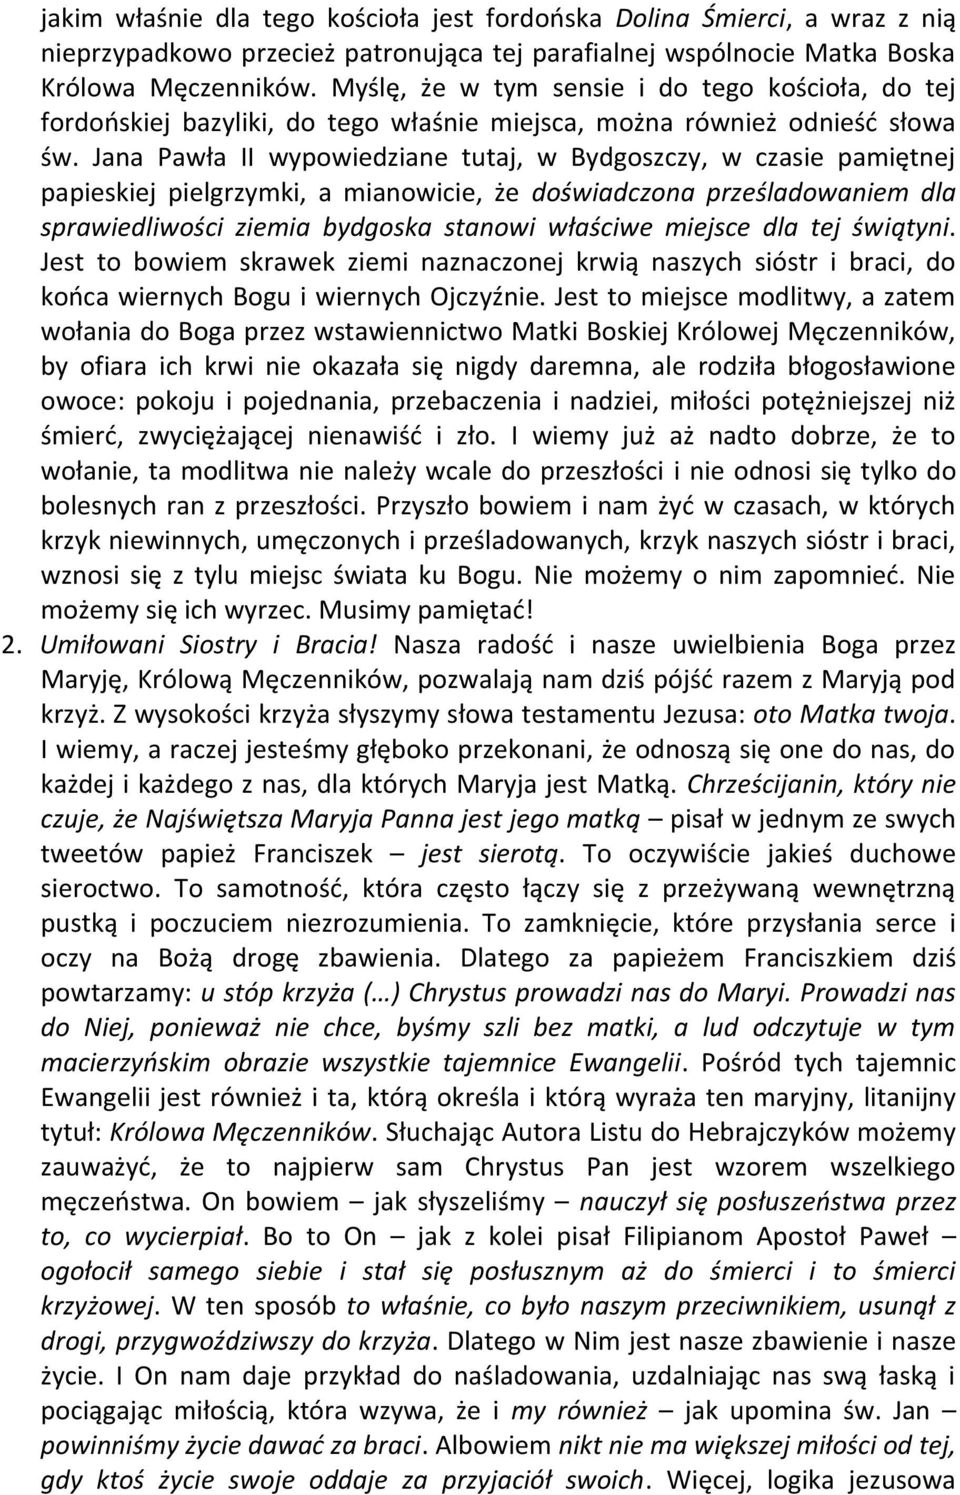 Jana Pawła II wypowiedziane tutaj, w Bydgoszczy, w czasie pamiętnej papieskiej pielgrzymki, a mianowicie, że doświadczona prześladowaniem dla sprawiedliwości ziemia bydgoska stanowi właściwe miejsce